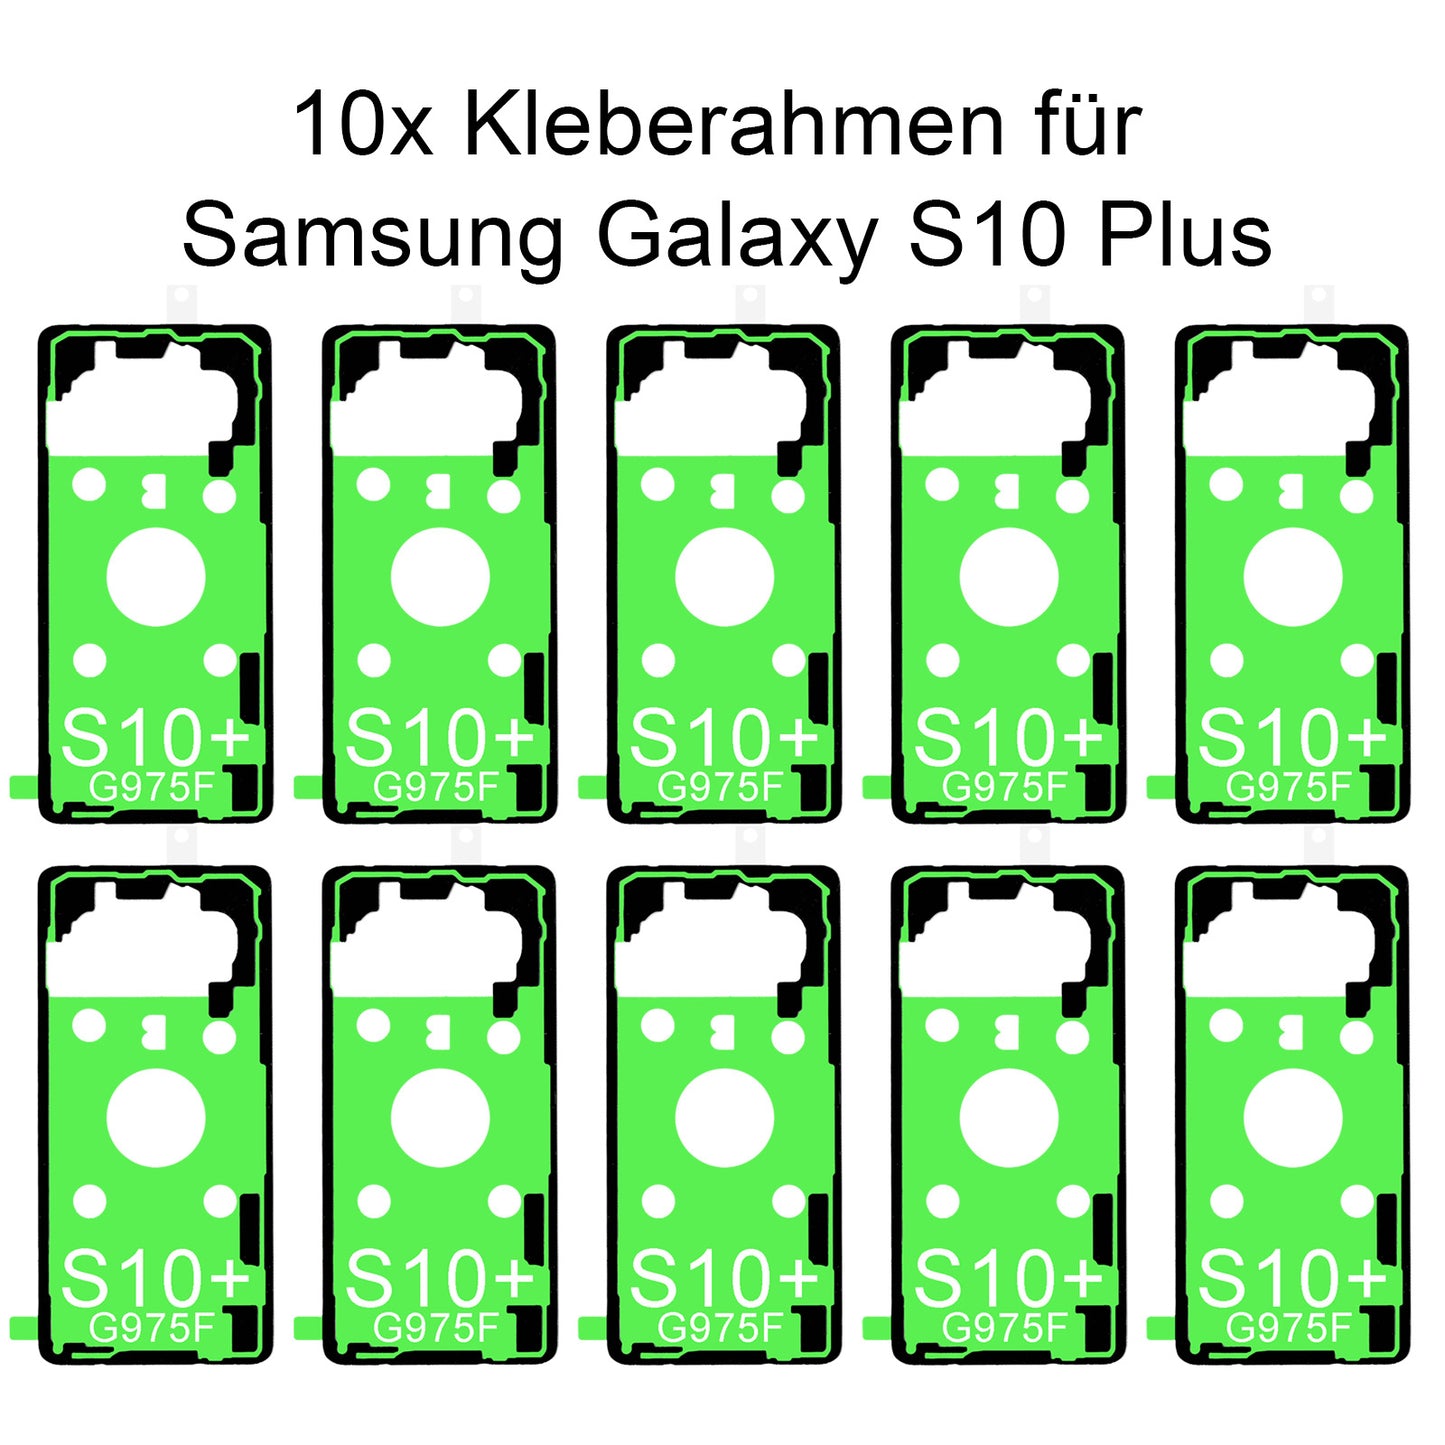 10x von unsern Samsung Galaxy S10 Plus G975F Kleberahmen, jetzt im Dinngsonline Shop entdecken und bestellen!